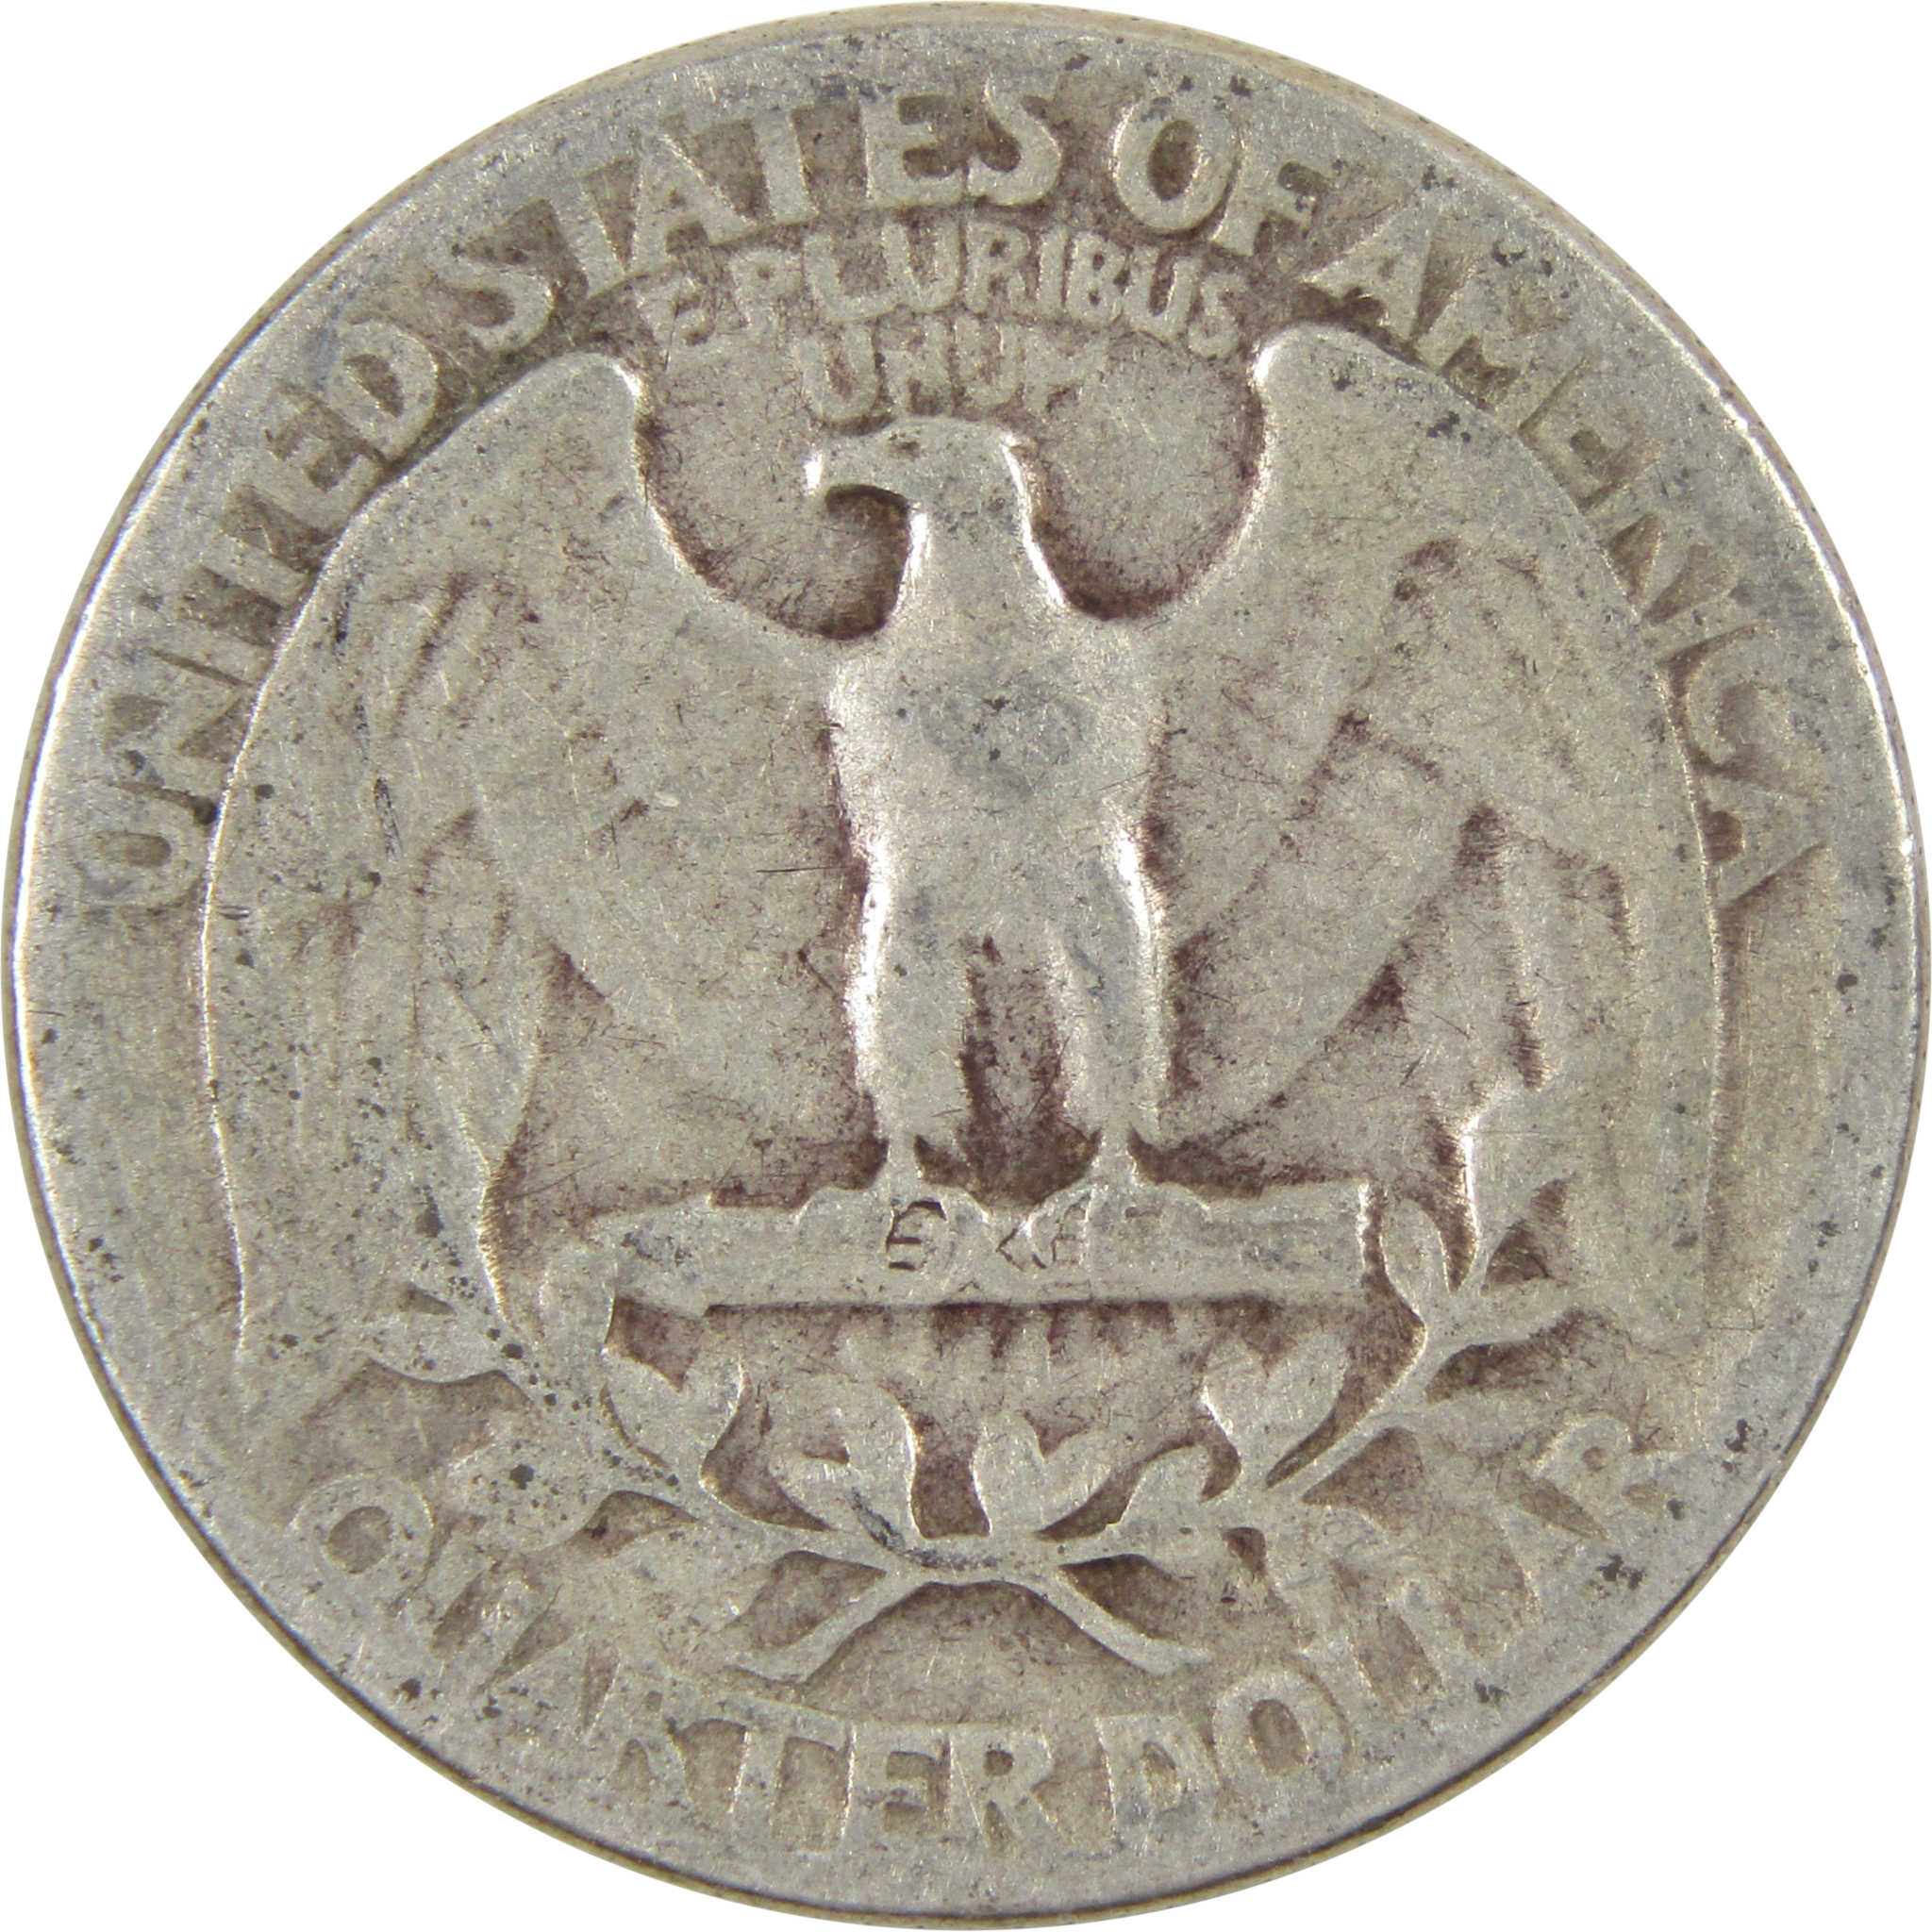 1945 Washington Quarter G Good 90% Silver 25c Coin